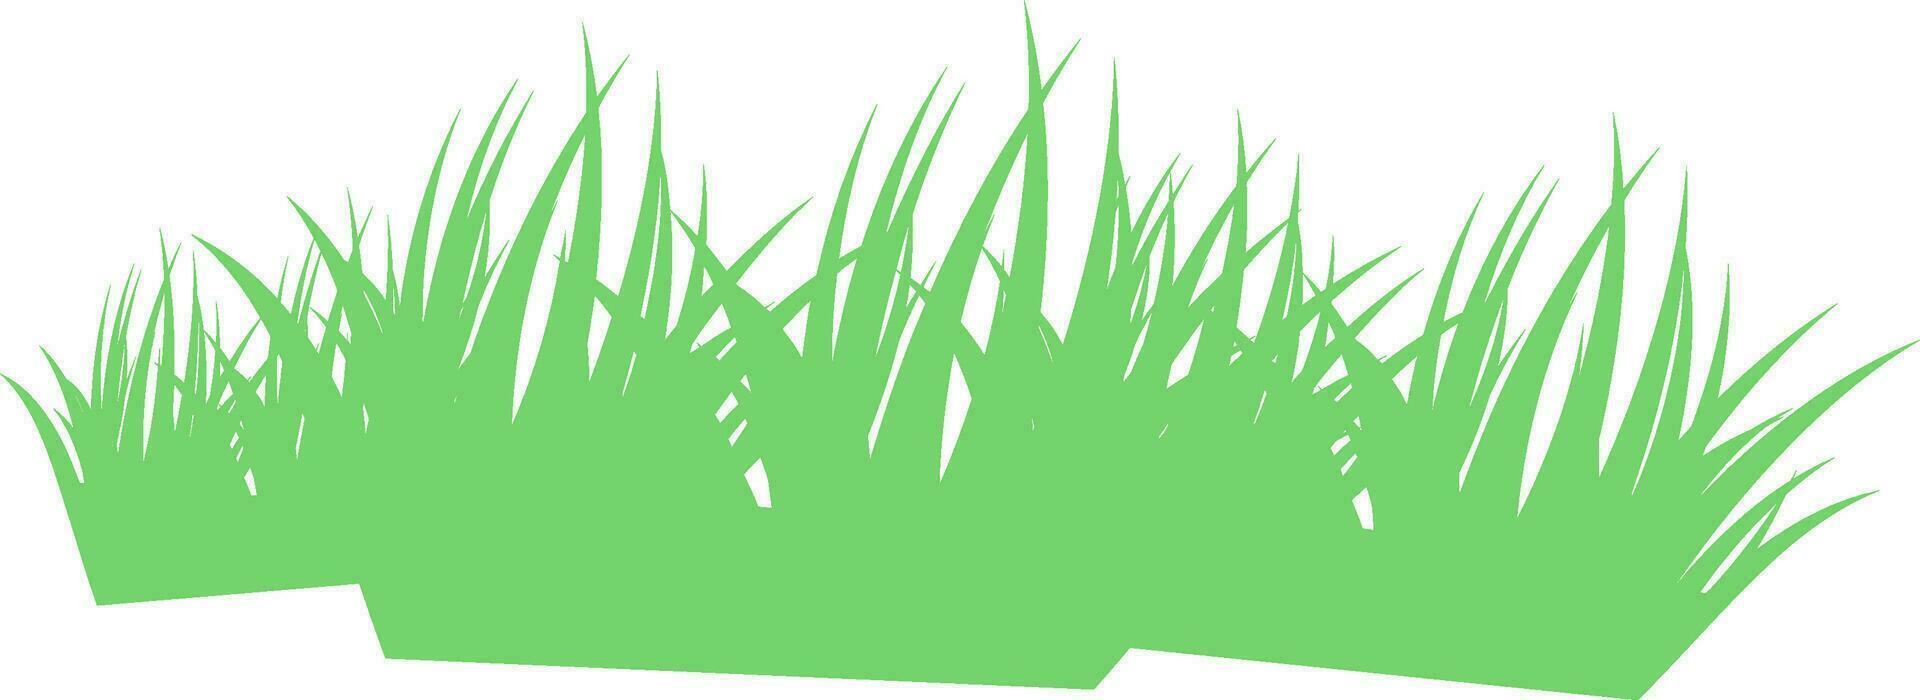 Illustration of green grass. vector